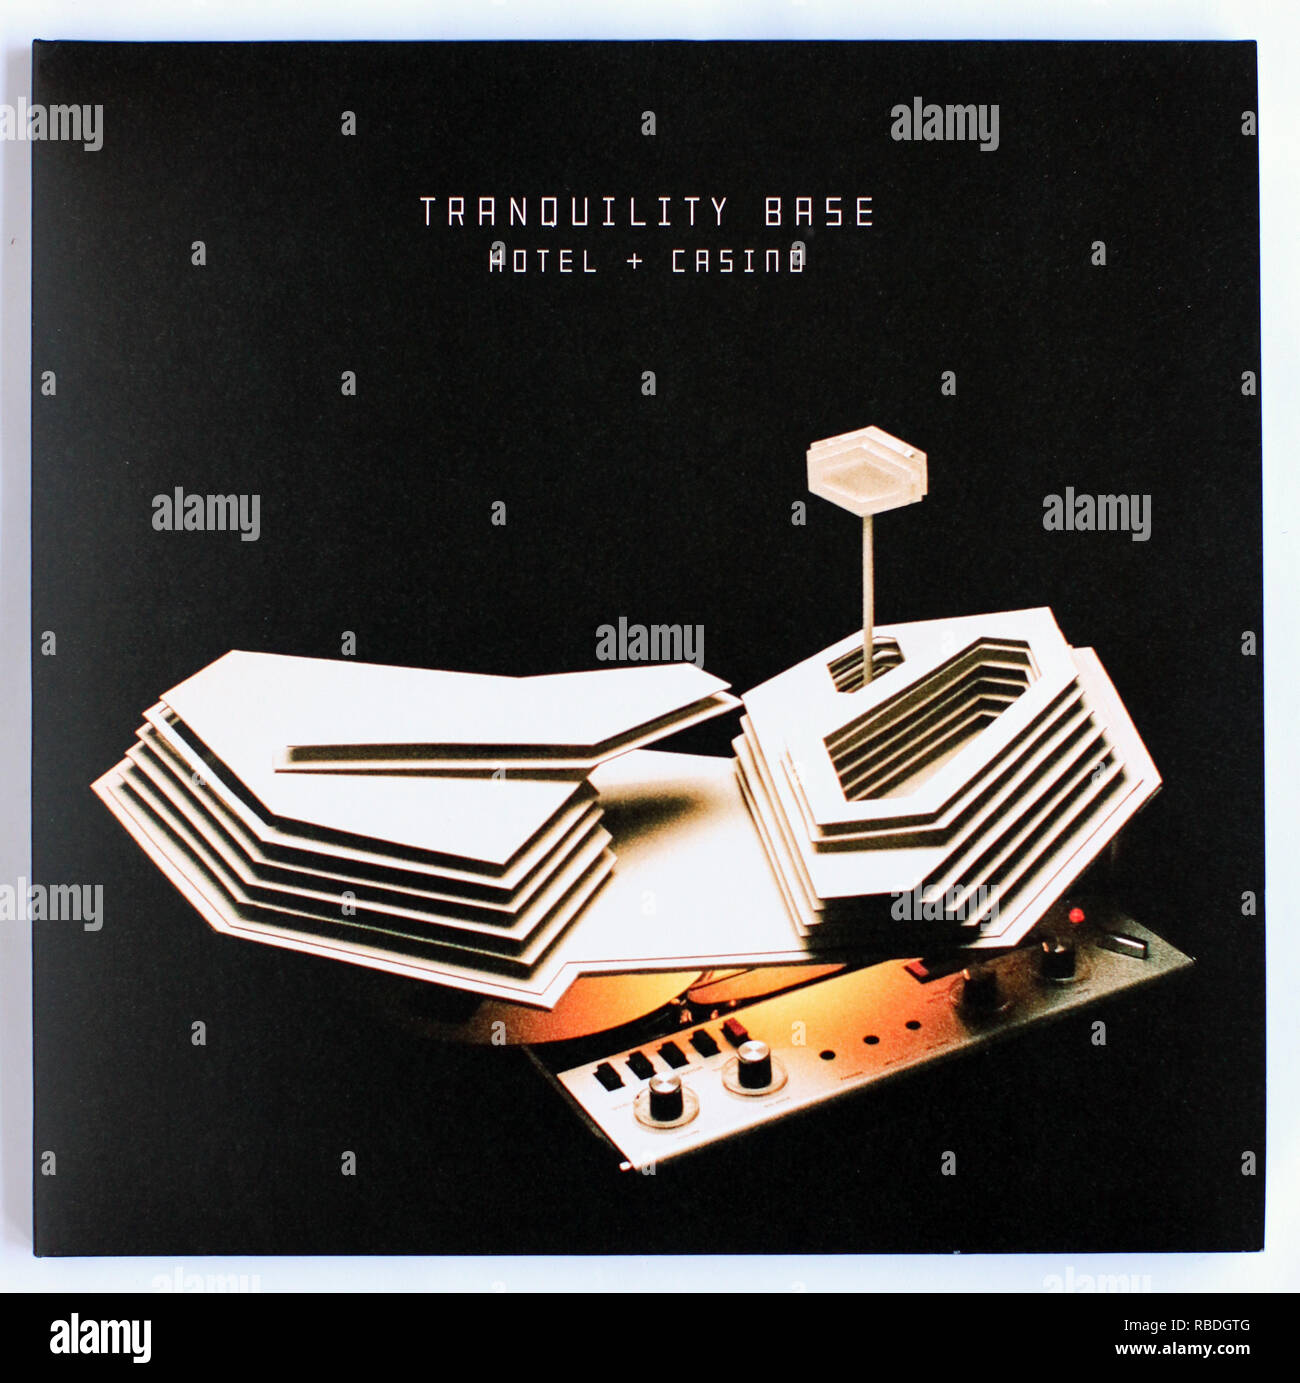 La couverture de tranquillité base Hotel and Casino par Arctic Monkeys. Album 2018 sur Domino Records - usage éditorial uniquement Banque D'Images